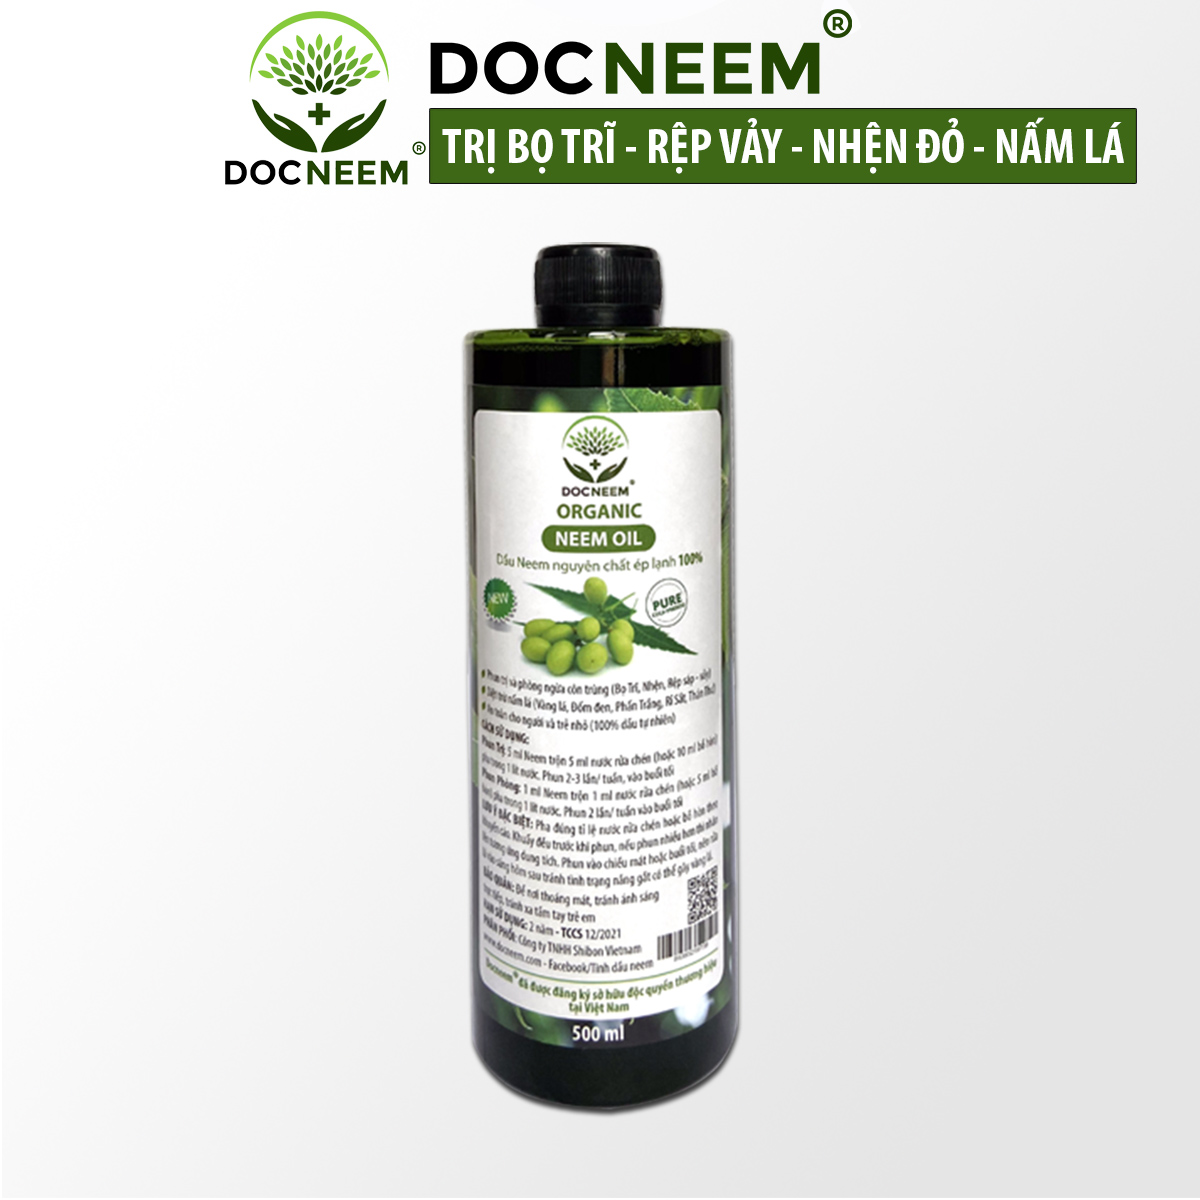 Dầu neem oil nguyên chất DOCNEEM hữu cơ phòng trị sâu bệnh hoa hồng, phong lan, cây cảnh, ép lạnh 500ml